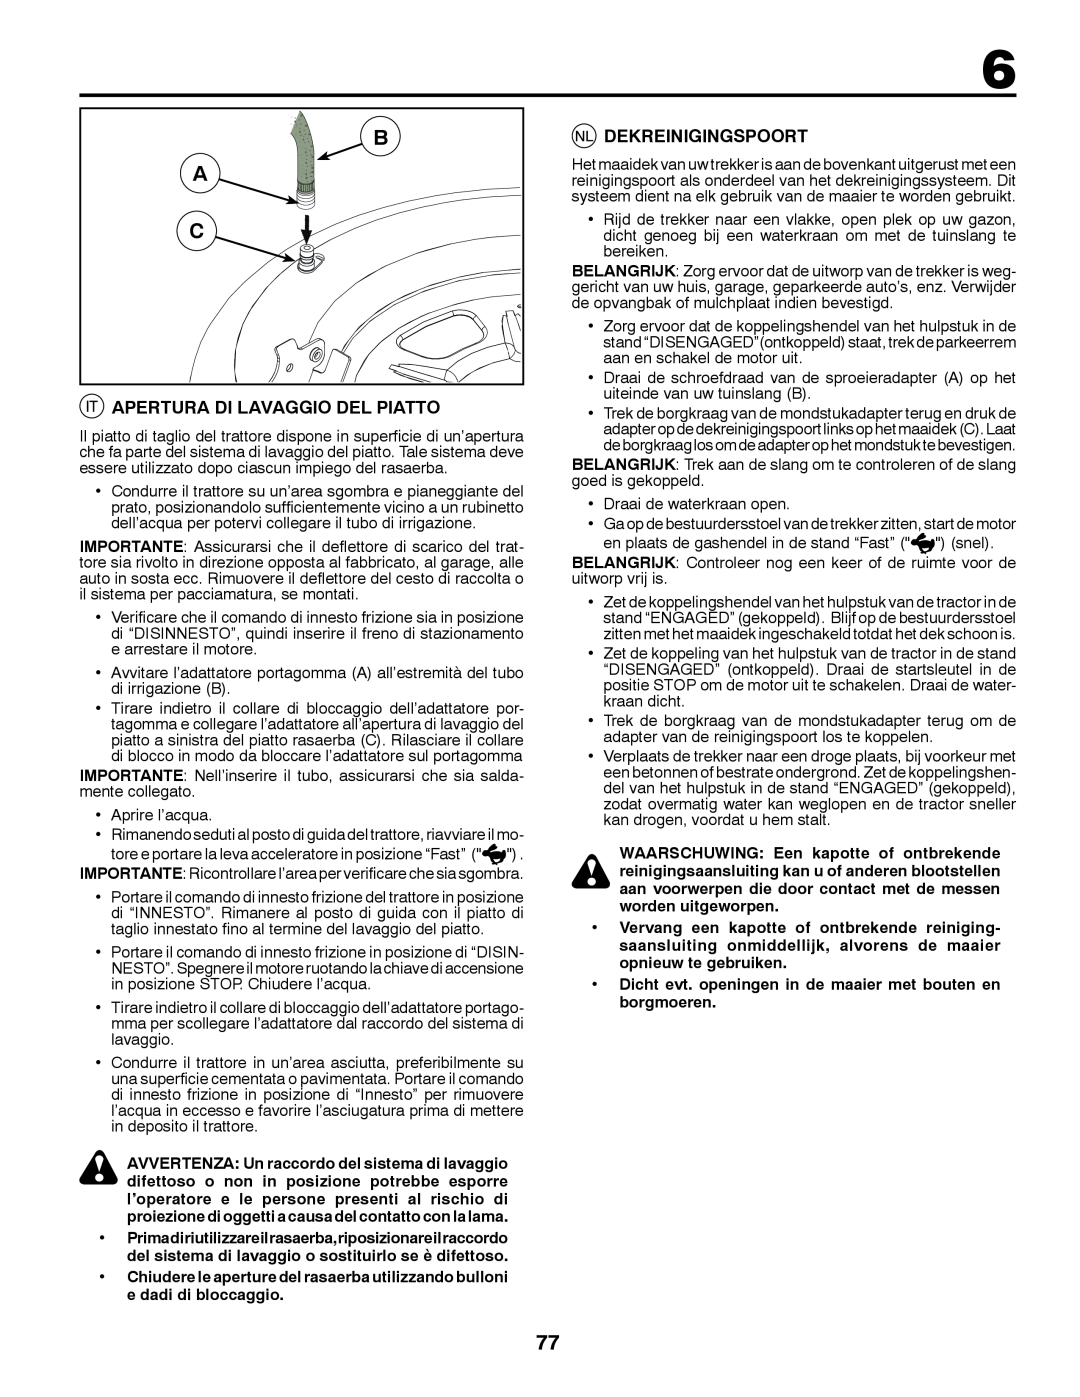 McCulloch 96041016500 instruction manual Apertura Di Lavaggio Del Piatto, Dekreinigingspoort 